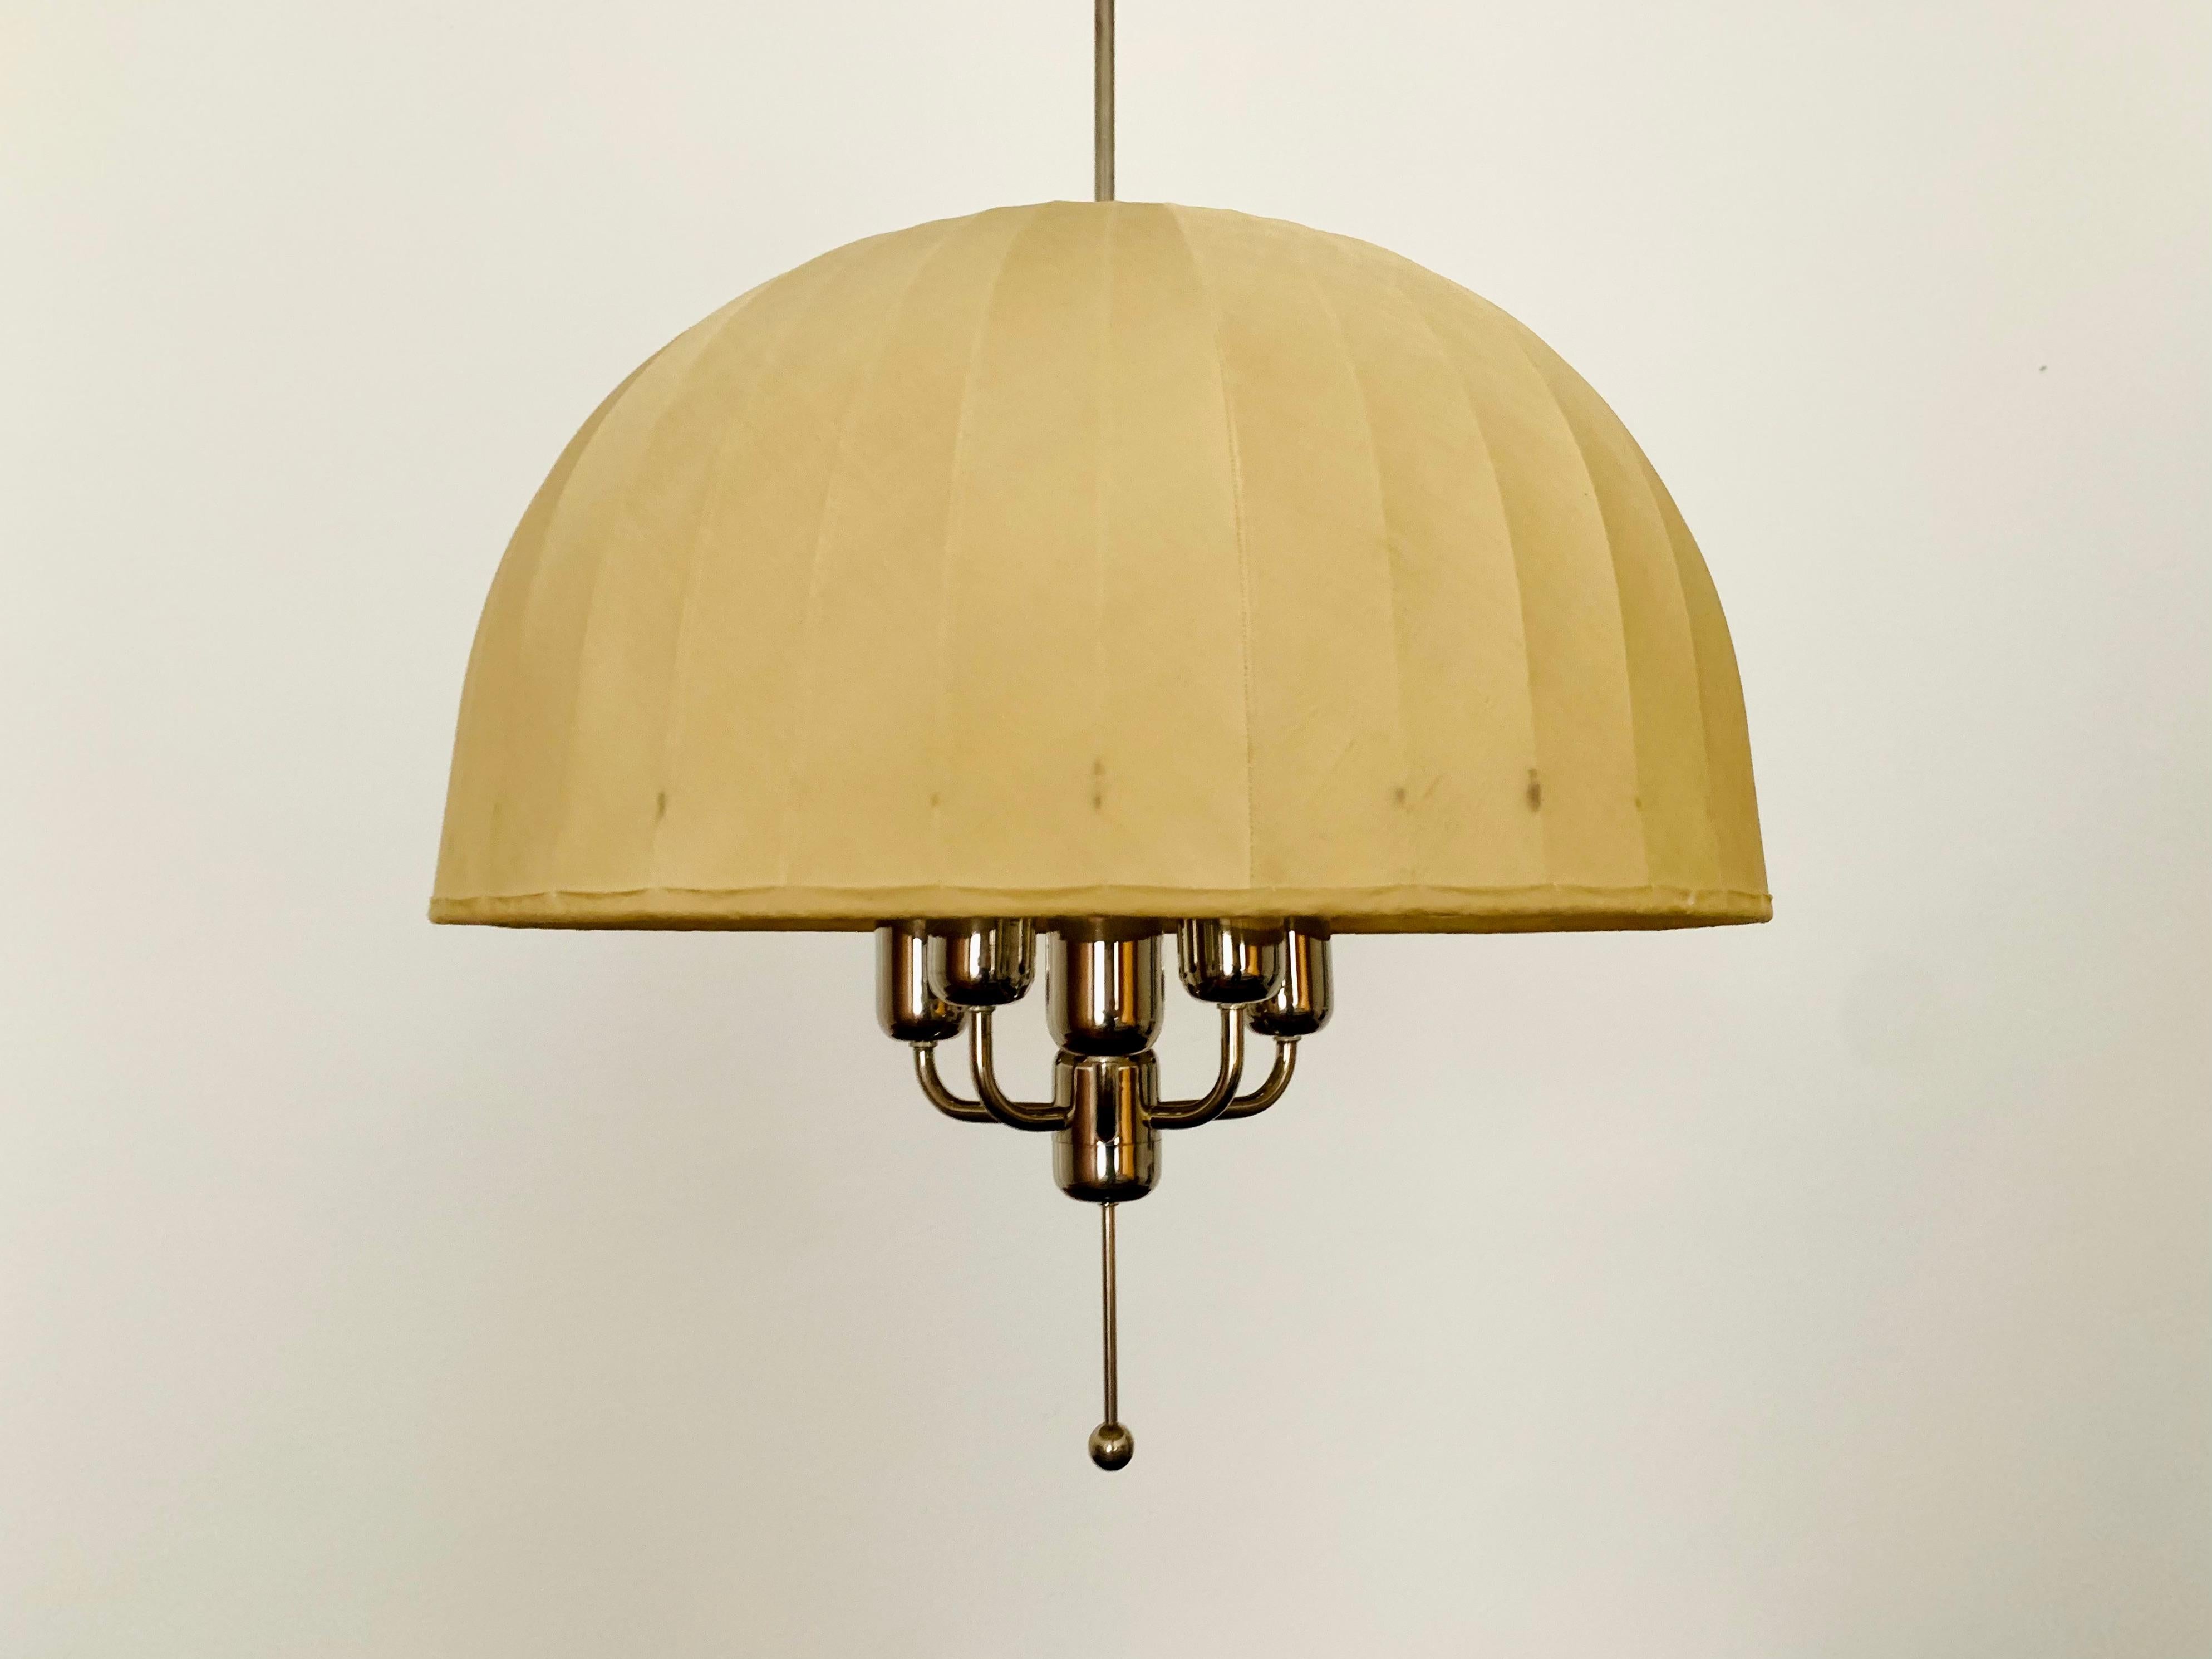 Wunderschöne und sehr seltene schwedische Hängelampe aus den 1960er Jahren.
Die Lampe mit dem schwebenden Schirm ist eine echte Bereicherung und ein absoluter Favorit für jedes Zuhause.
Es entsteht ein sehr angenehmes und warmes Licht.

Hersteller: